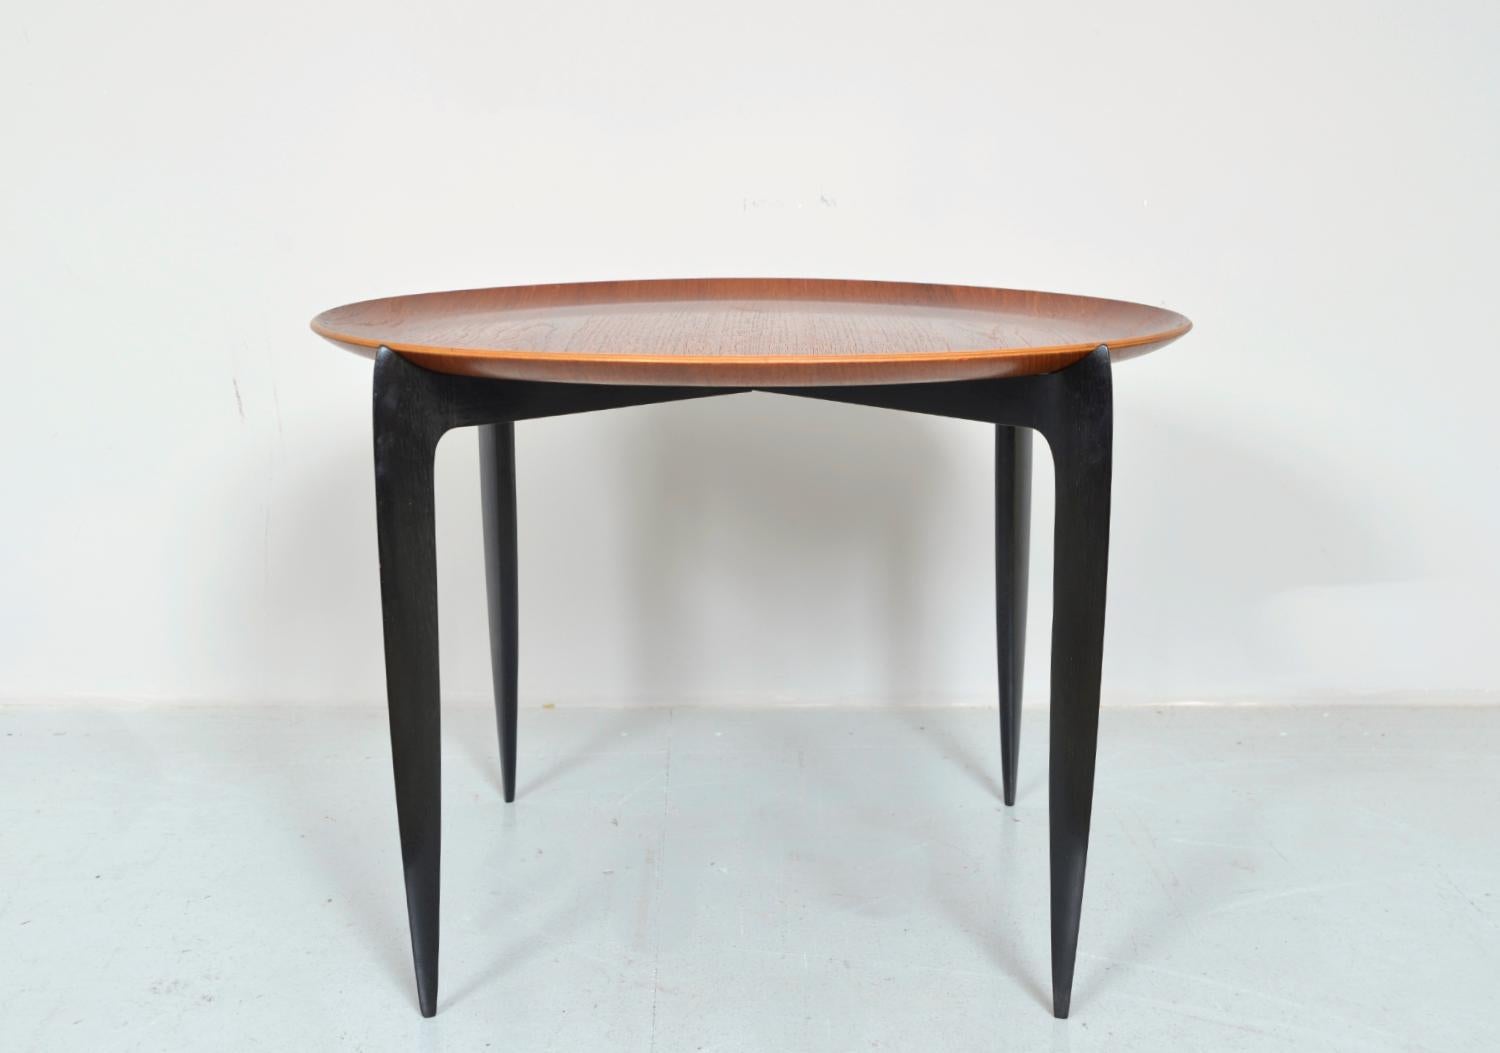 Très élégante table à plateau en teck, modèle 4508, conçue par H. Engholm et Sven Aage Willumsen pour Fritz Hansen en 1957. Le plateau circulaire est magnifiquement sculpté en teck et repose simplement sur une base en bois pliante composée de quatre